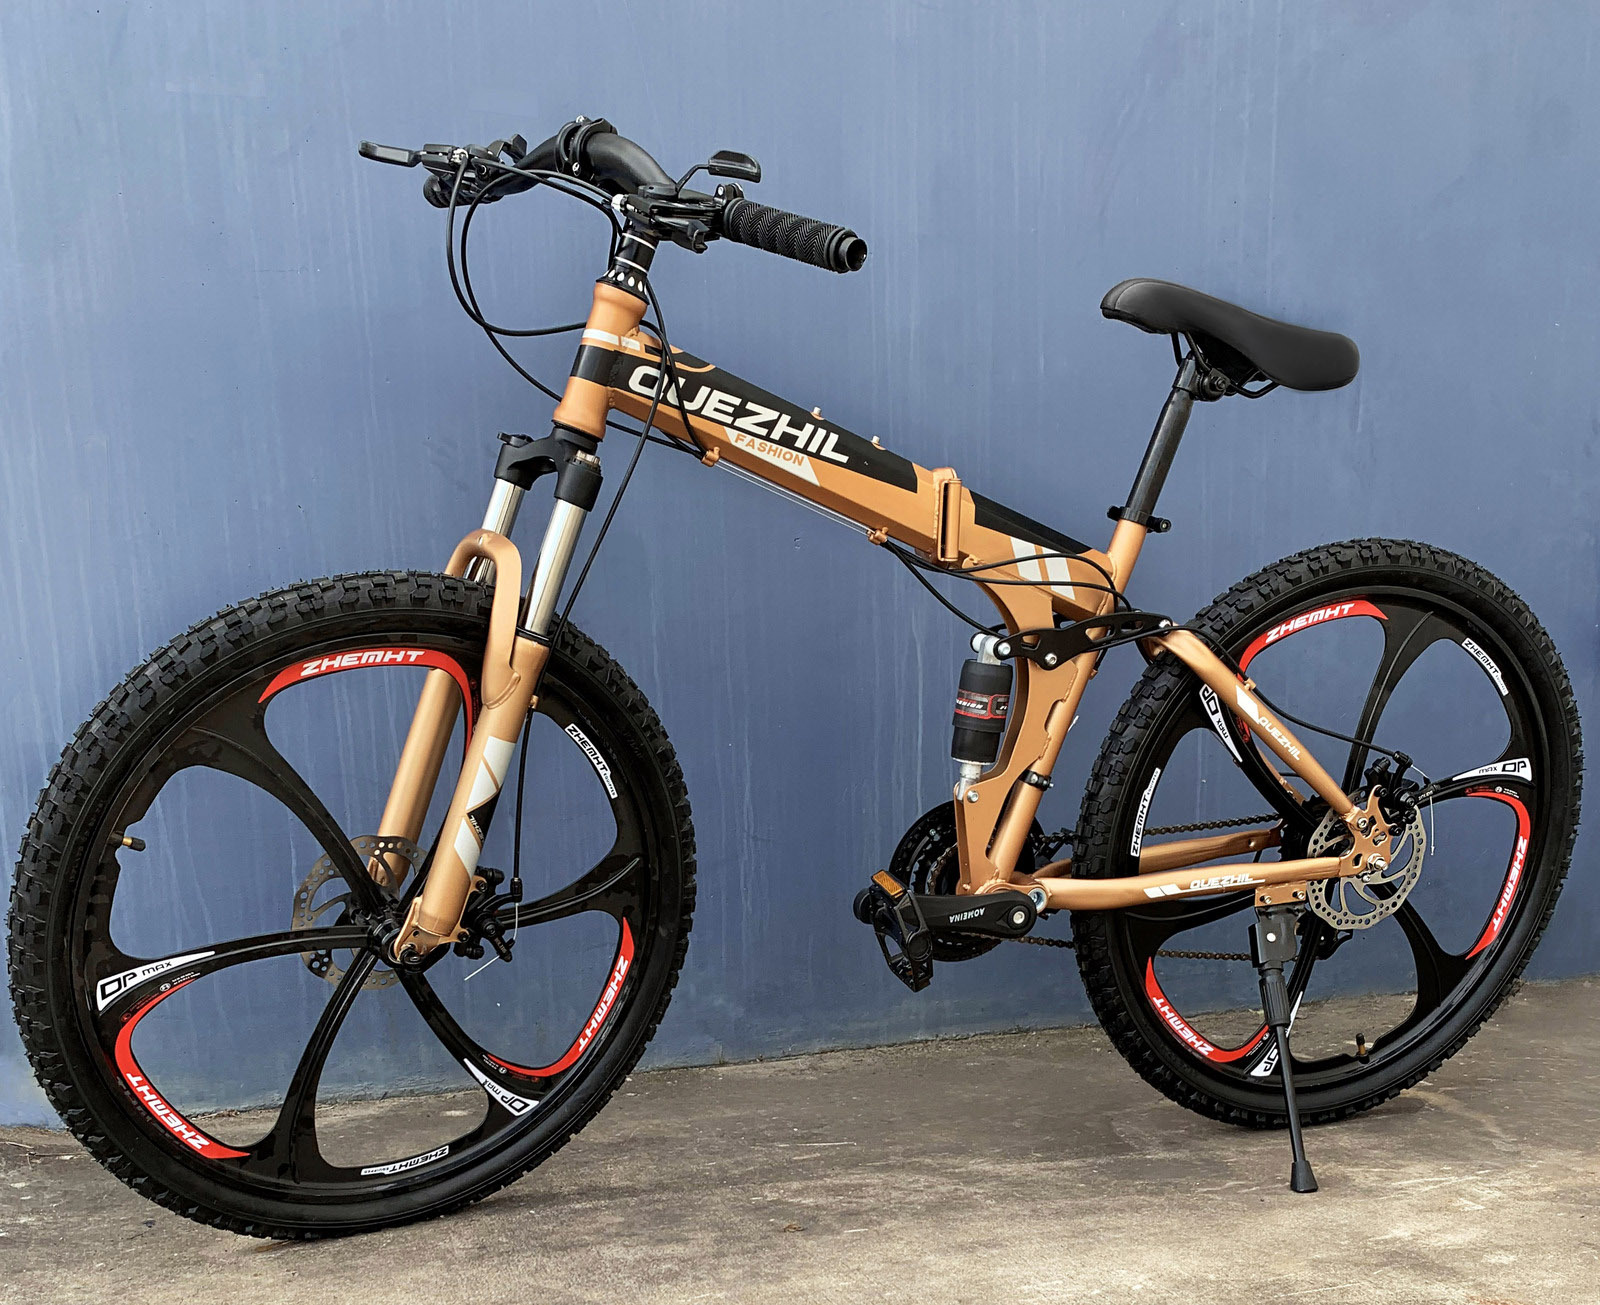 6 Spoke Foldable Mountain Bike (Premium Gold & Black Bicycle)